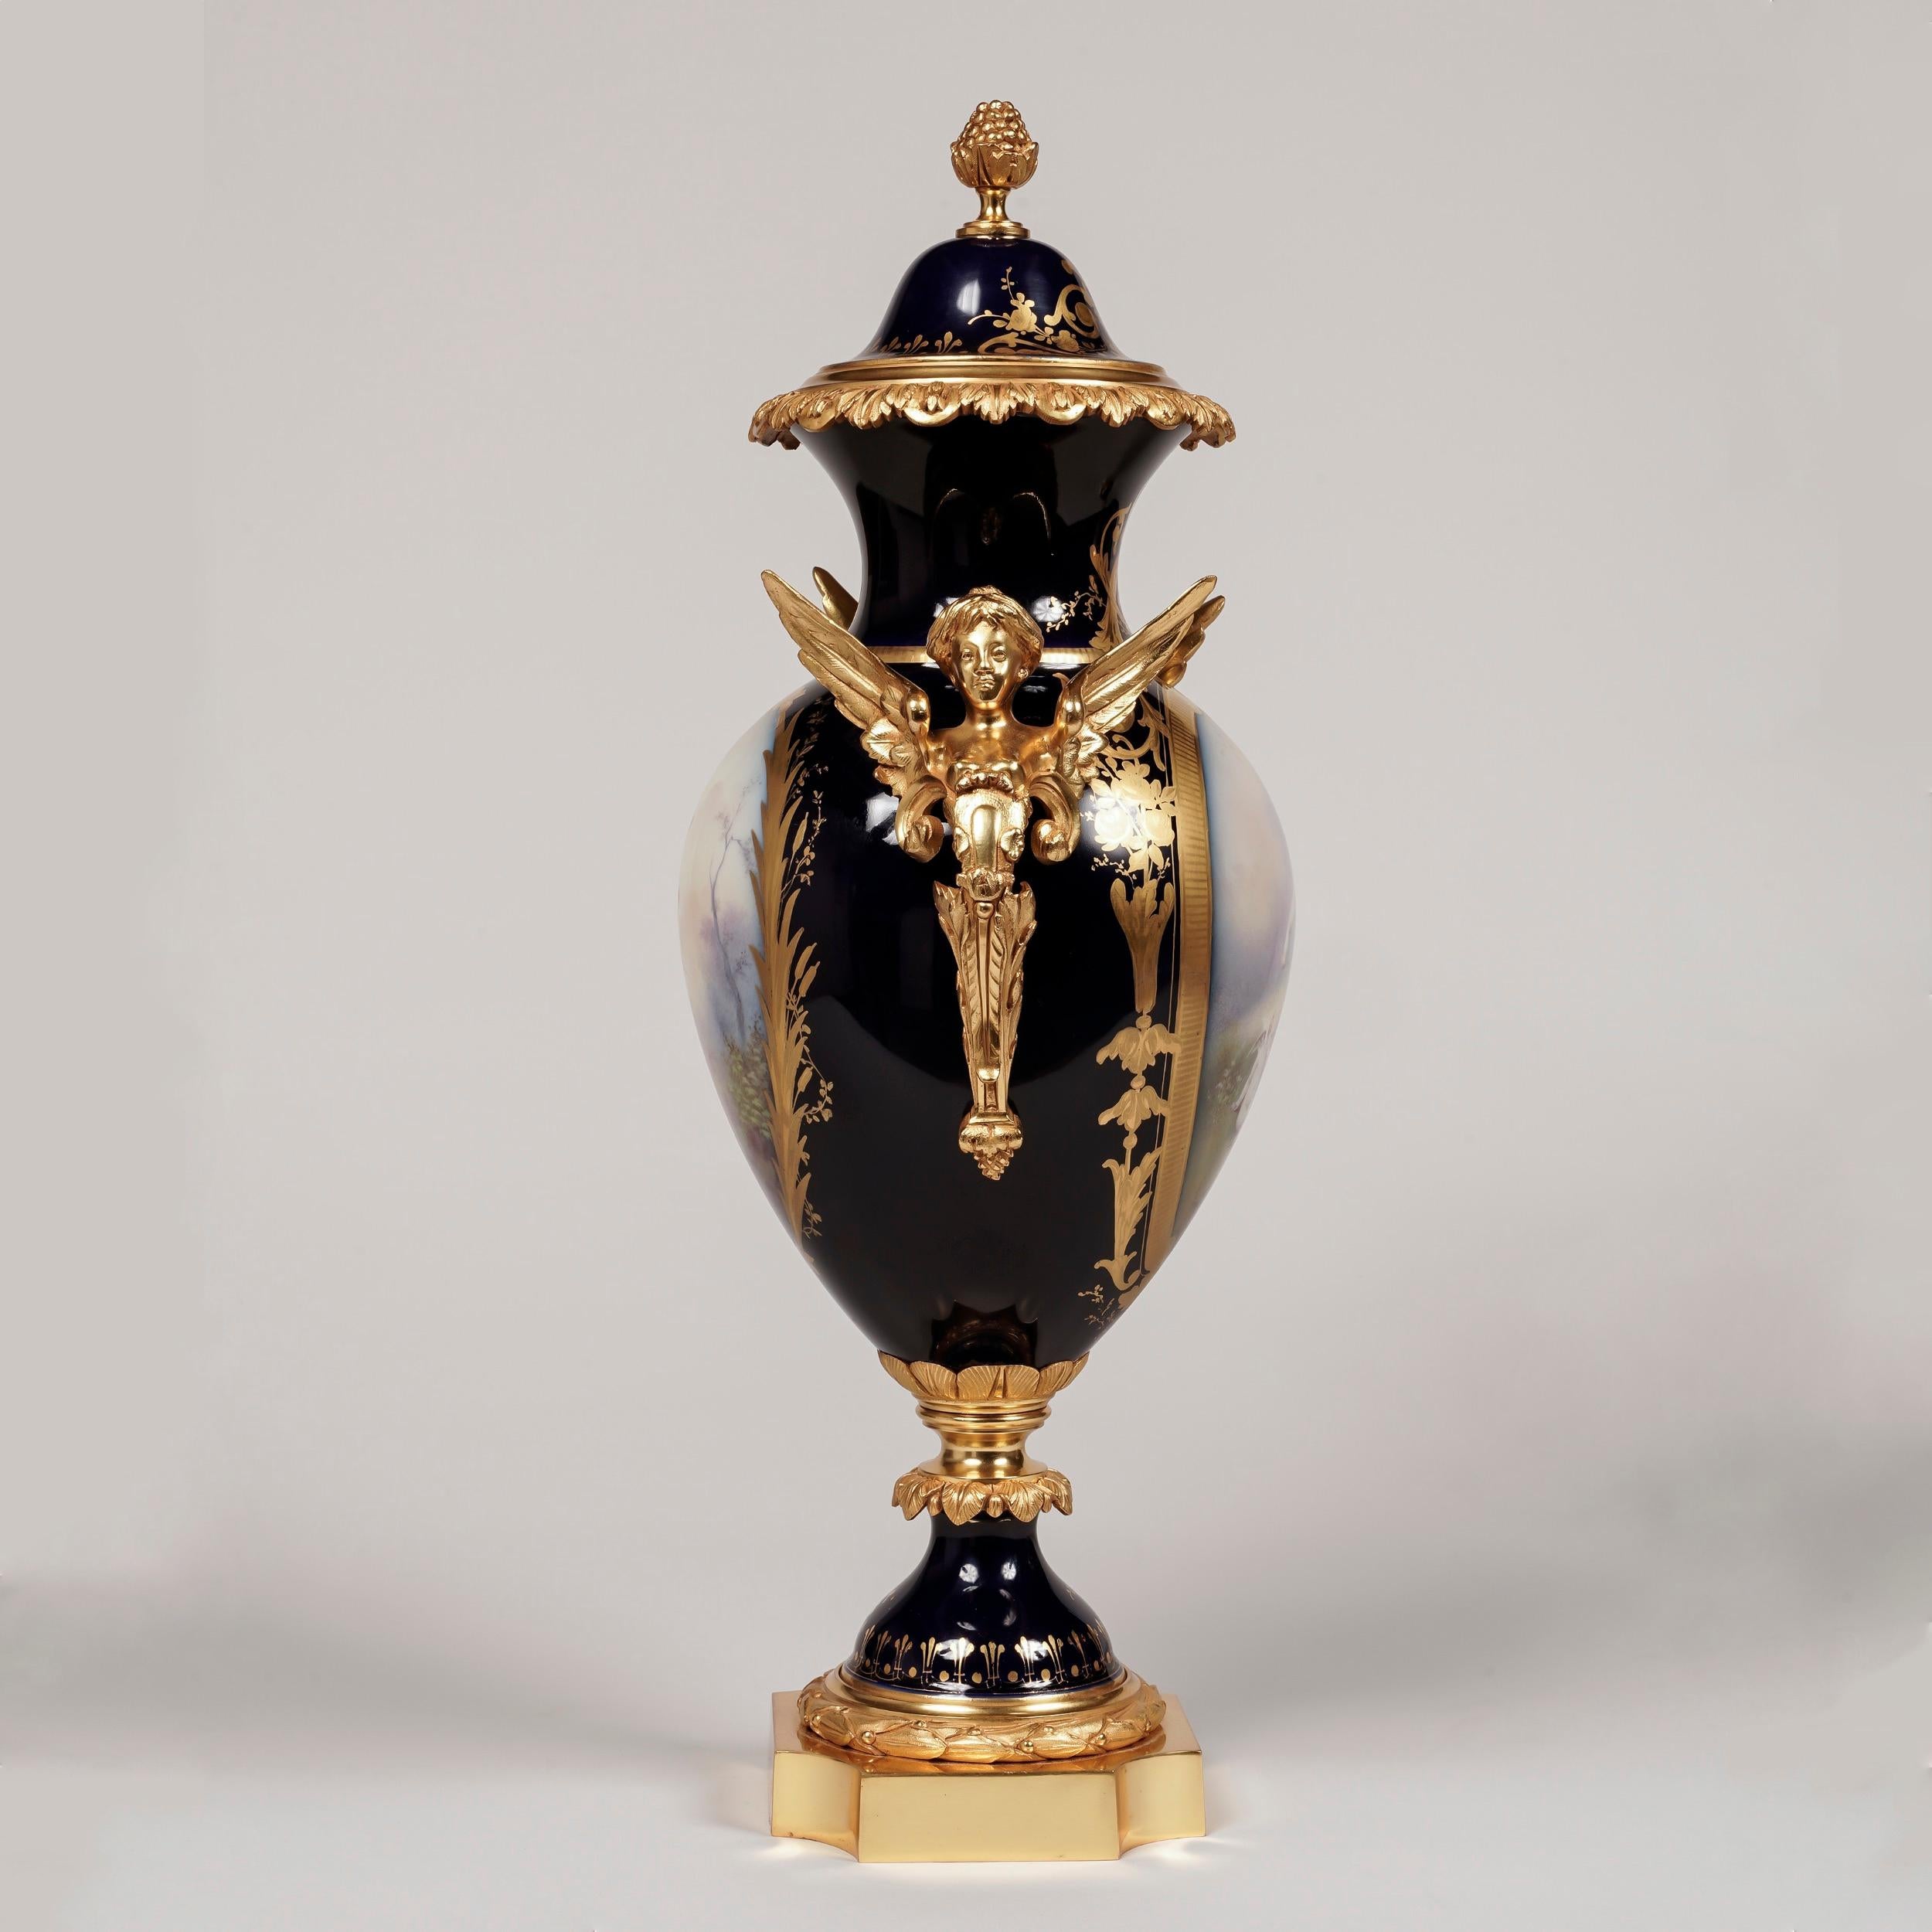 Ein Paar in Ormolu gefasste Beau Bleu 'Sèvres' Porzellanvasen

Jede Vase steht auf einem quadratischen Ormolu-Sockel mit eingeschnittenen Ecken. Die Porzellan-Balusterkörper mit Ormolu-Doppelhenkeln, die als geflügelte Hermen modelliert sind, sind